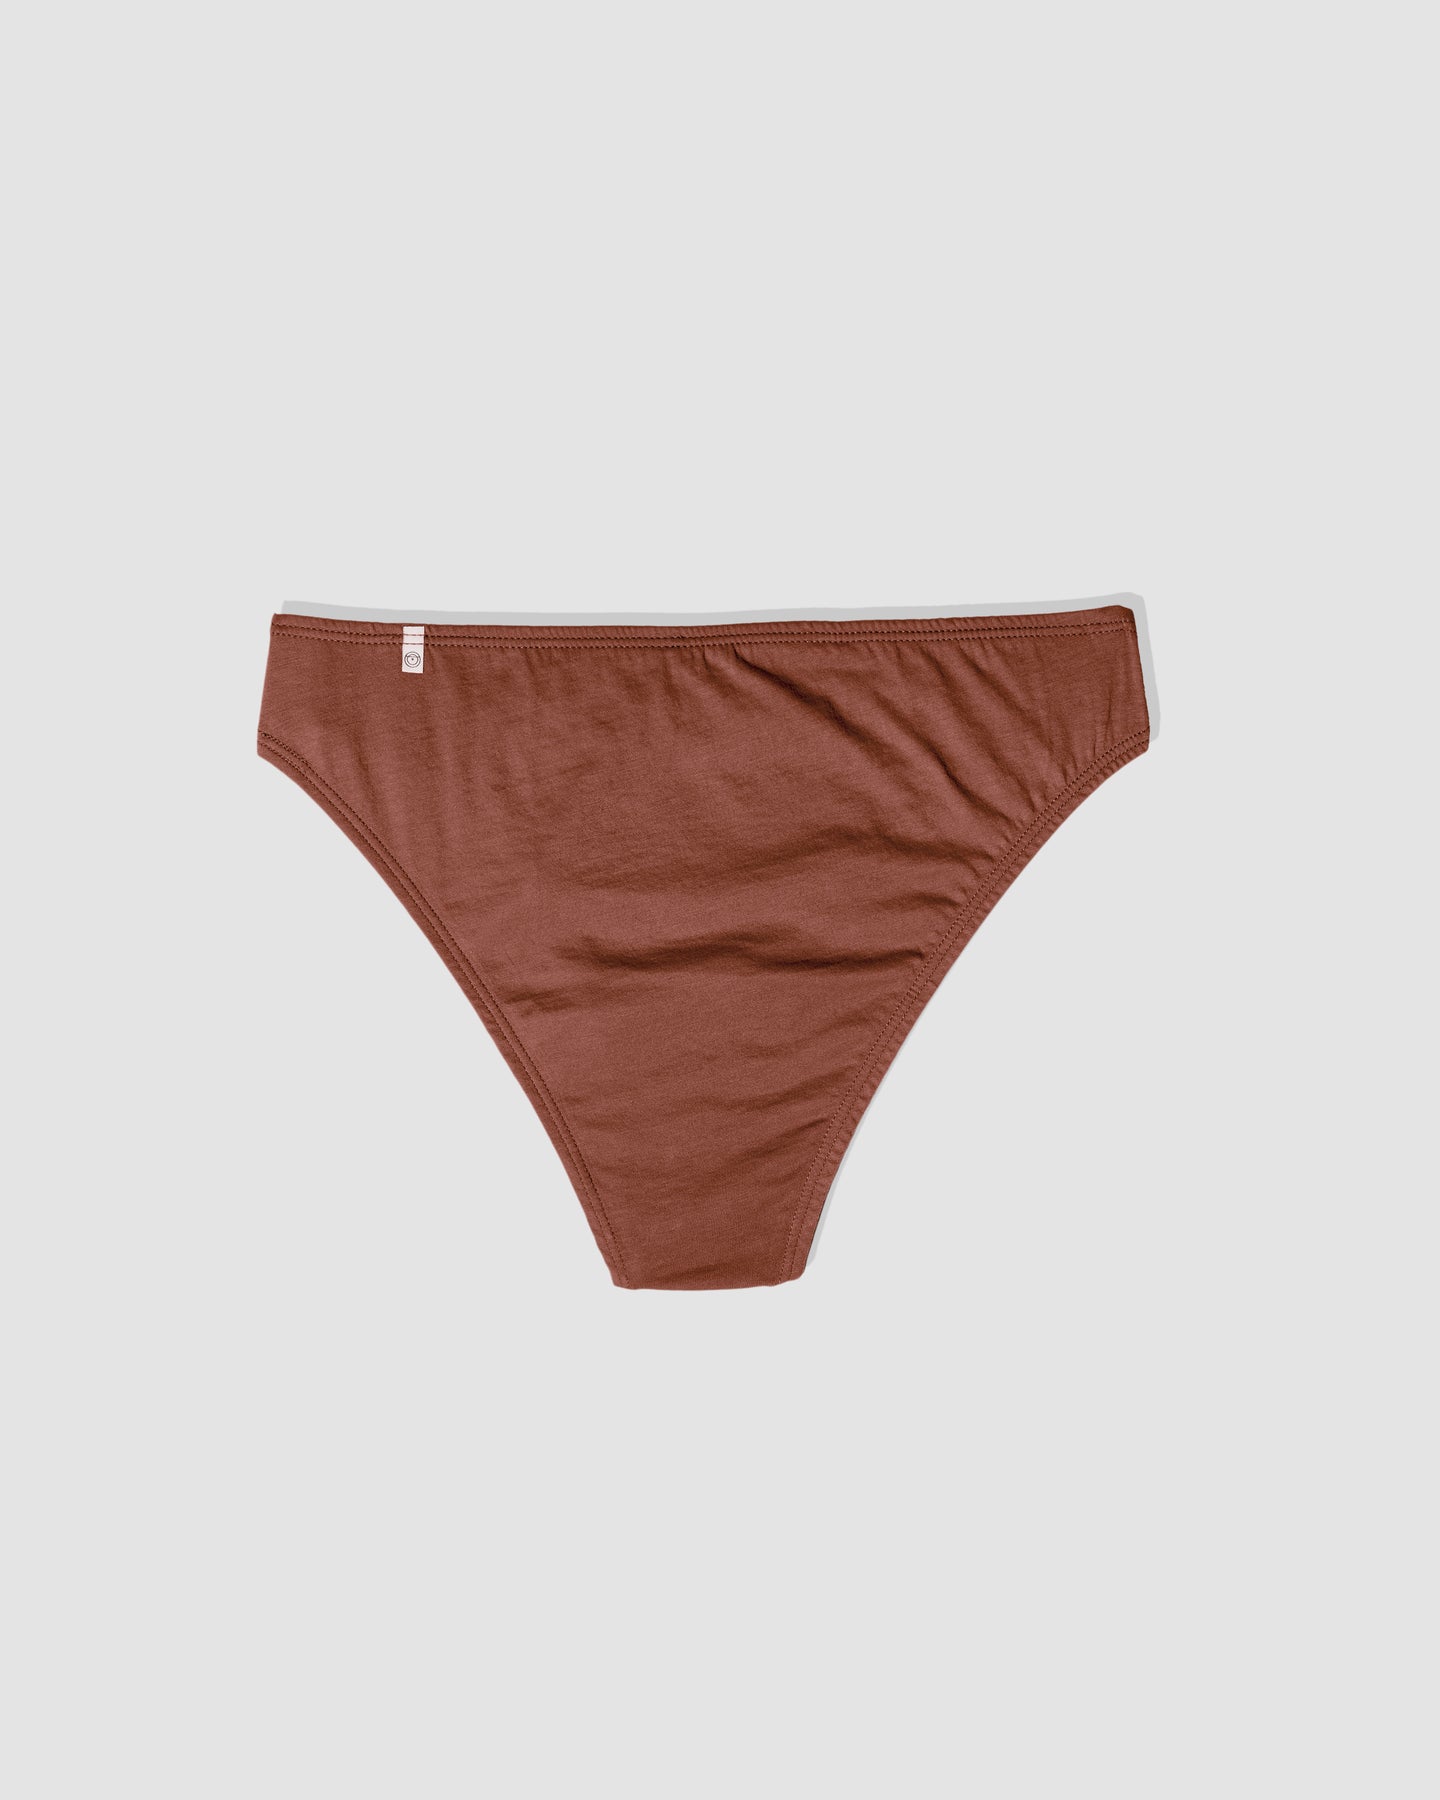 ODDOBODY Underwear Review